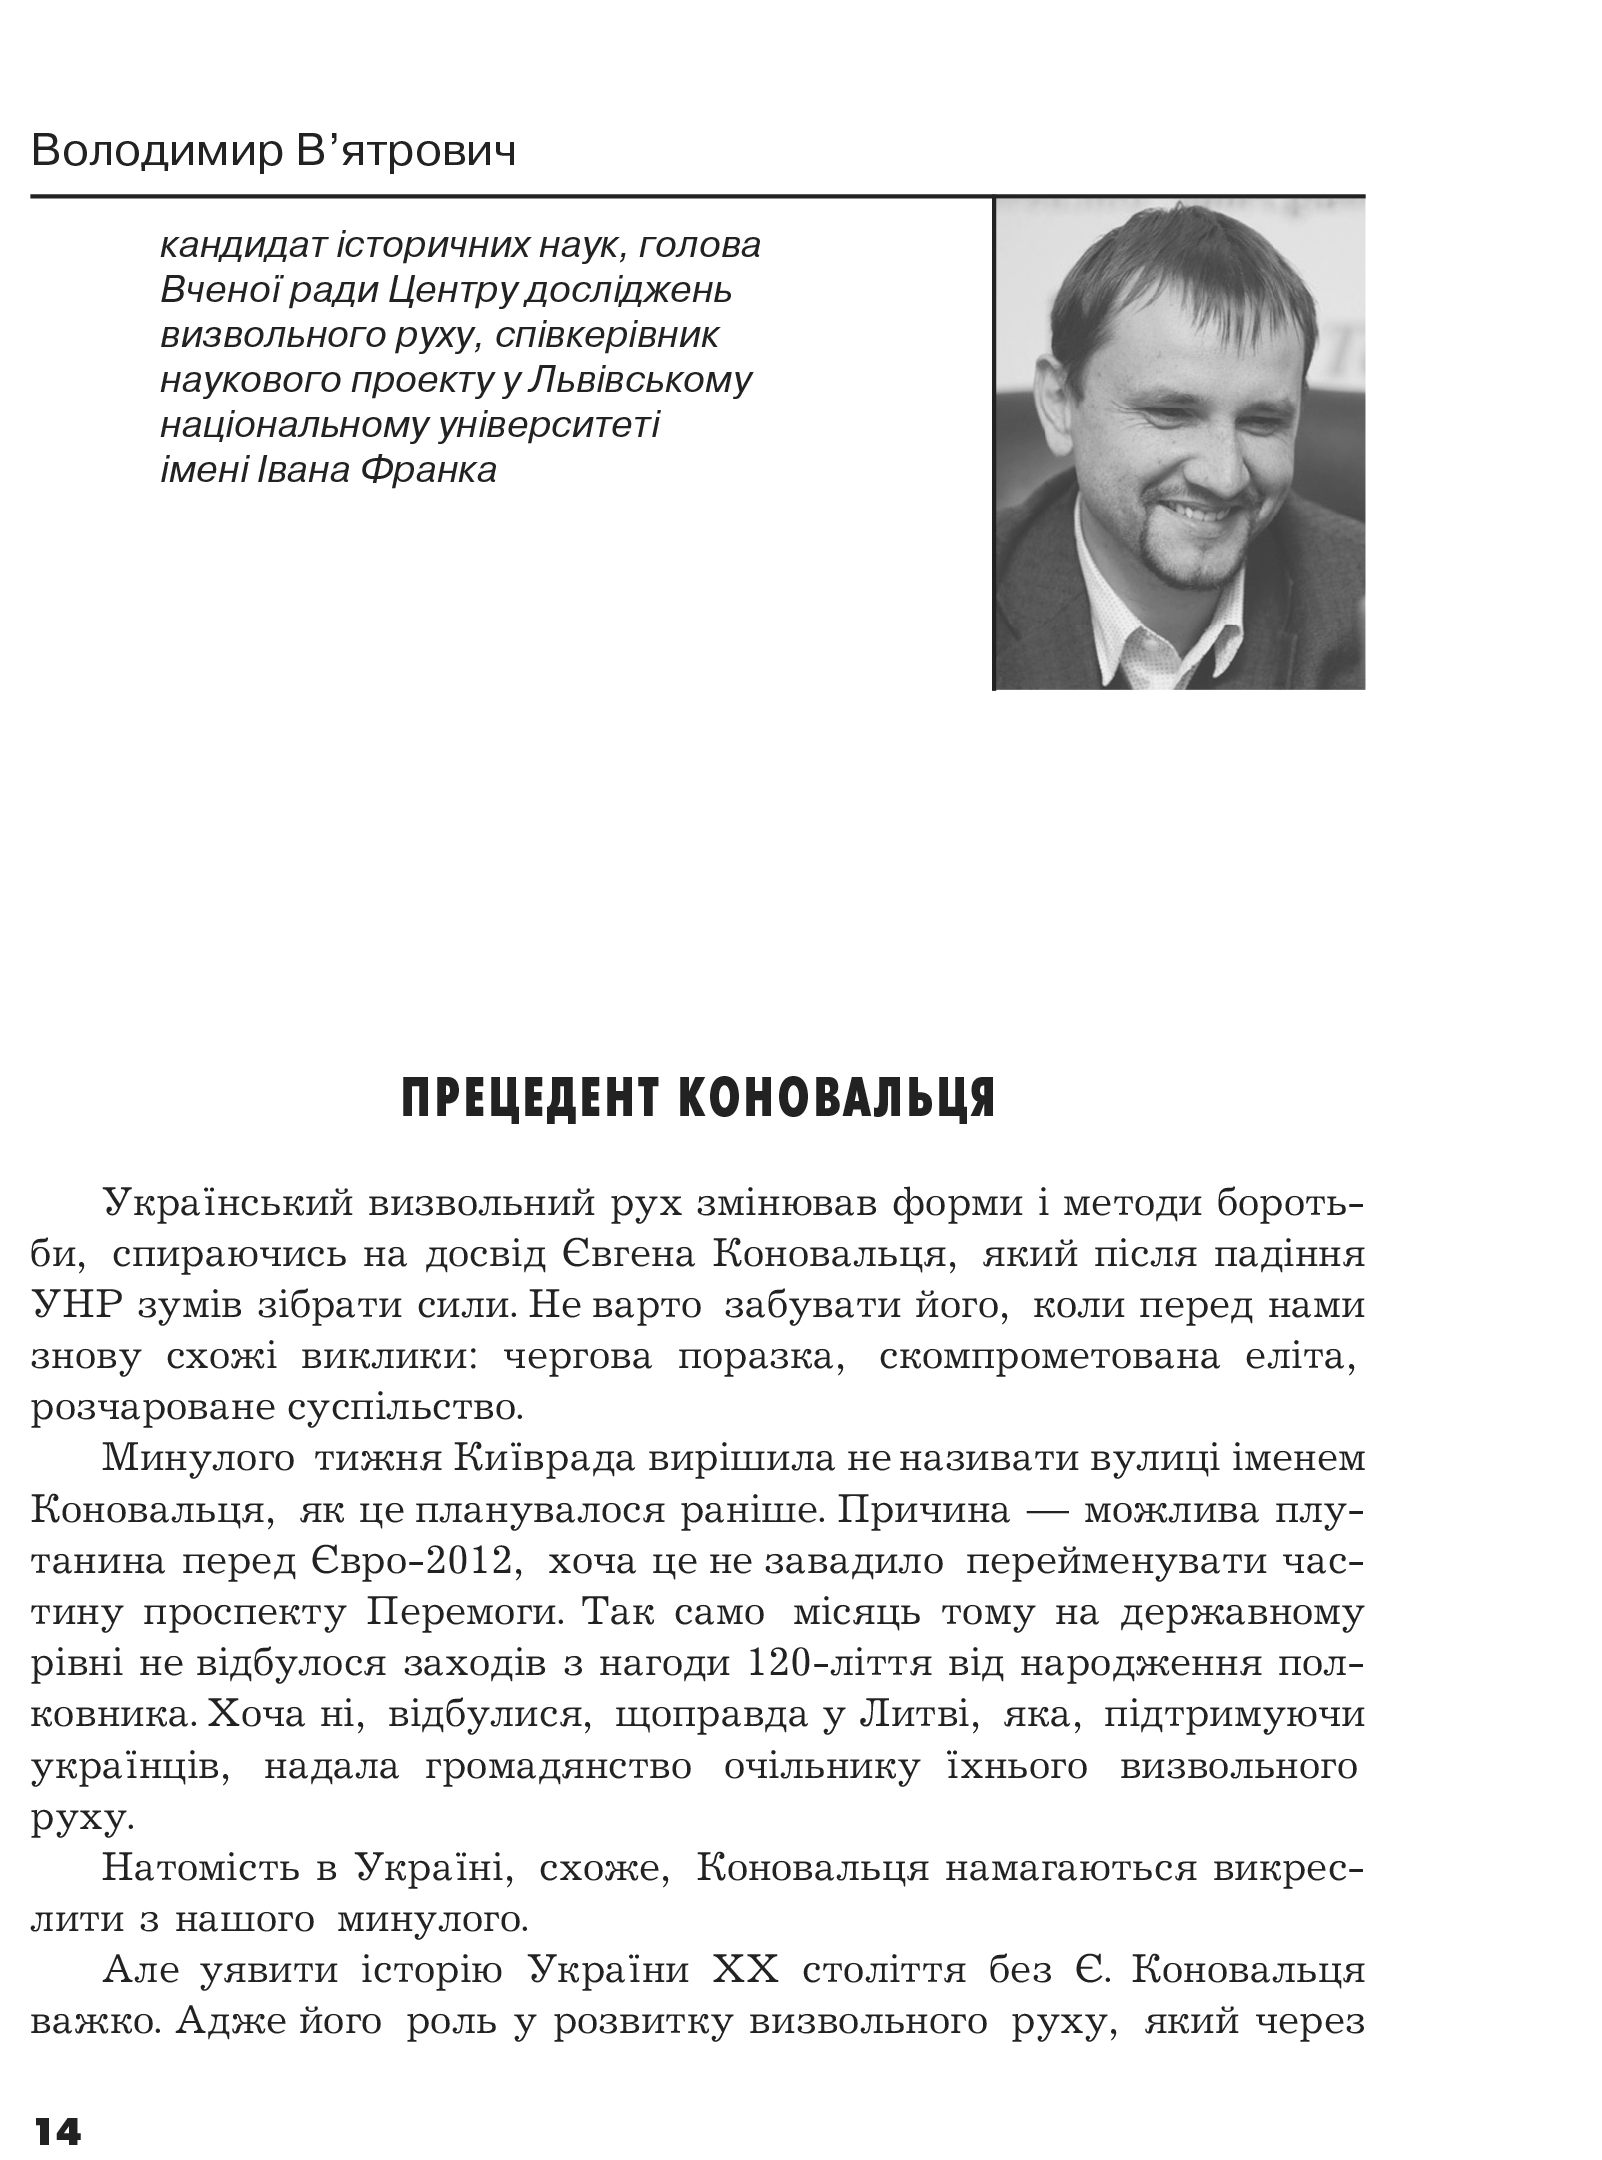 Український визвольний рух №16, ст. 14 - 16